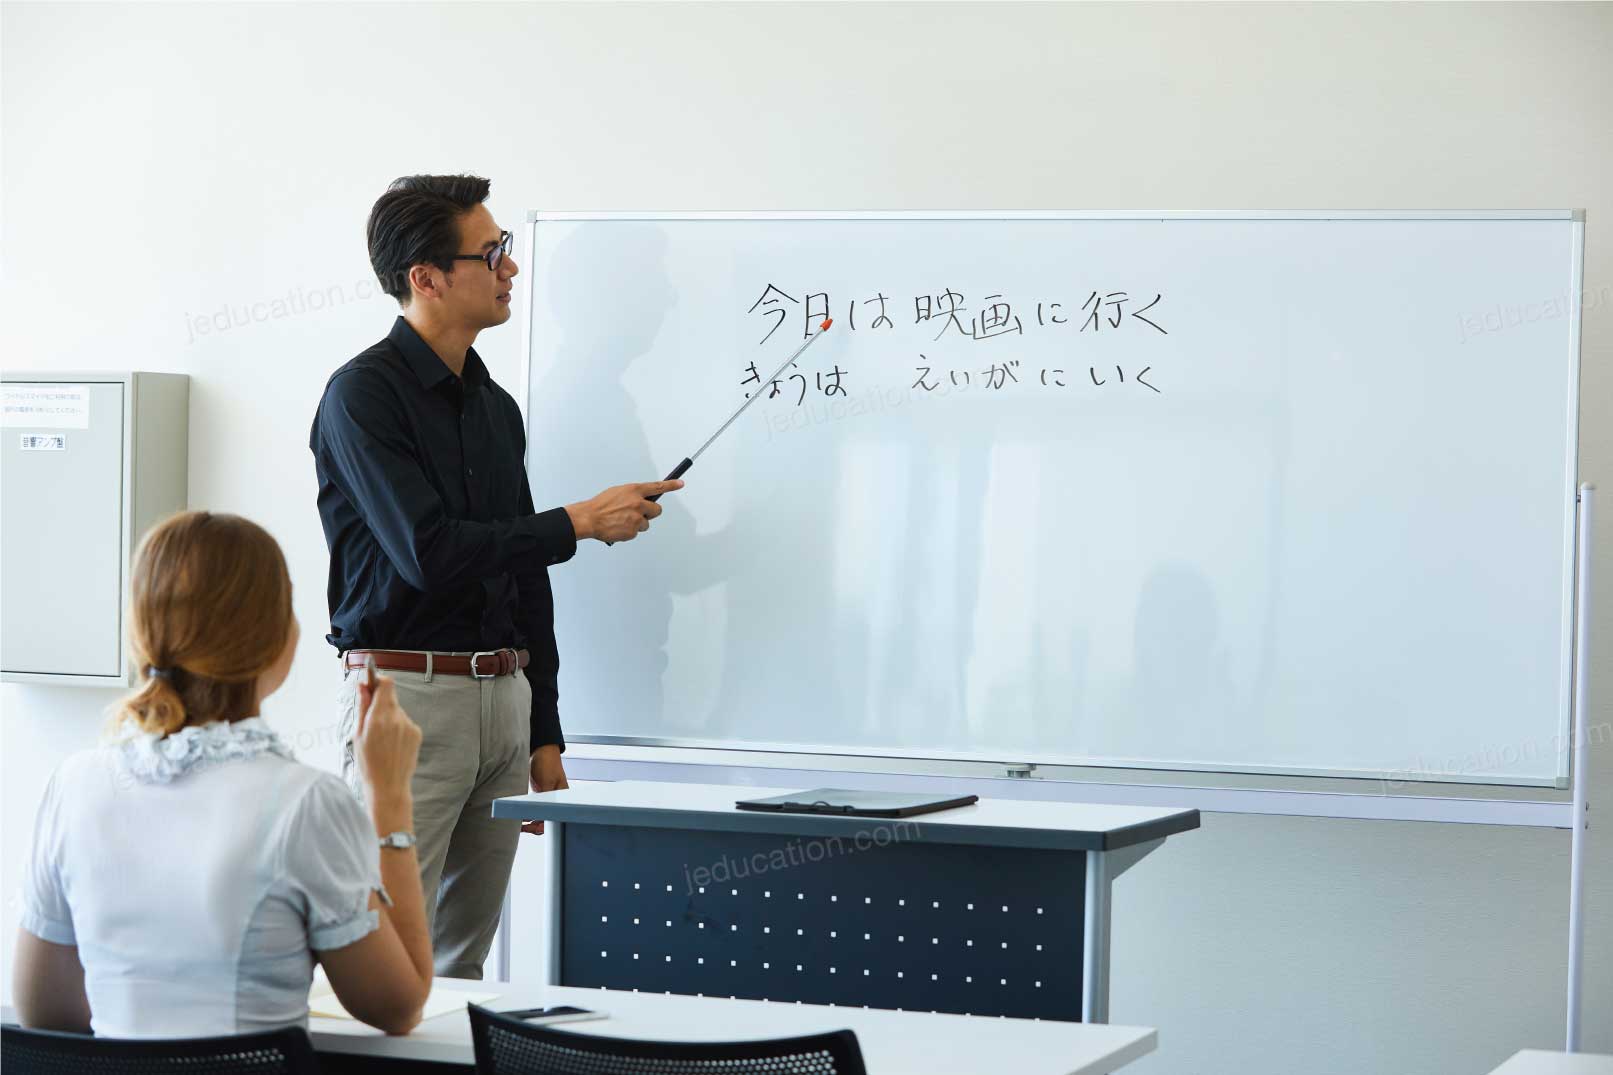 โรงเรียนสอนภาษาญี่ปุ่น